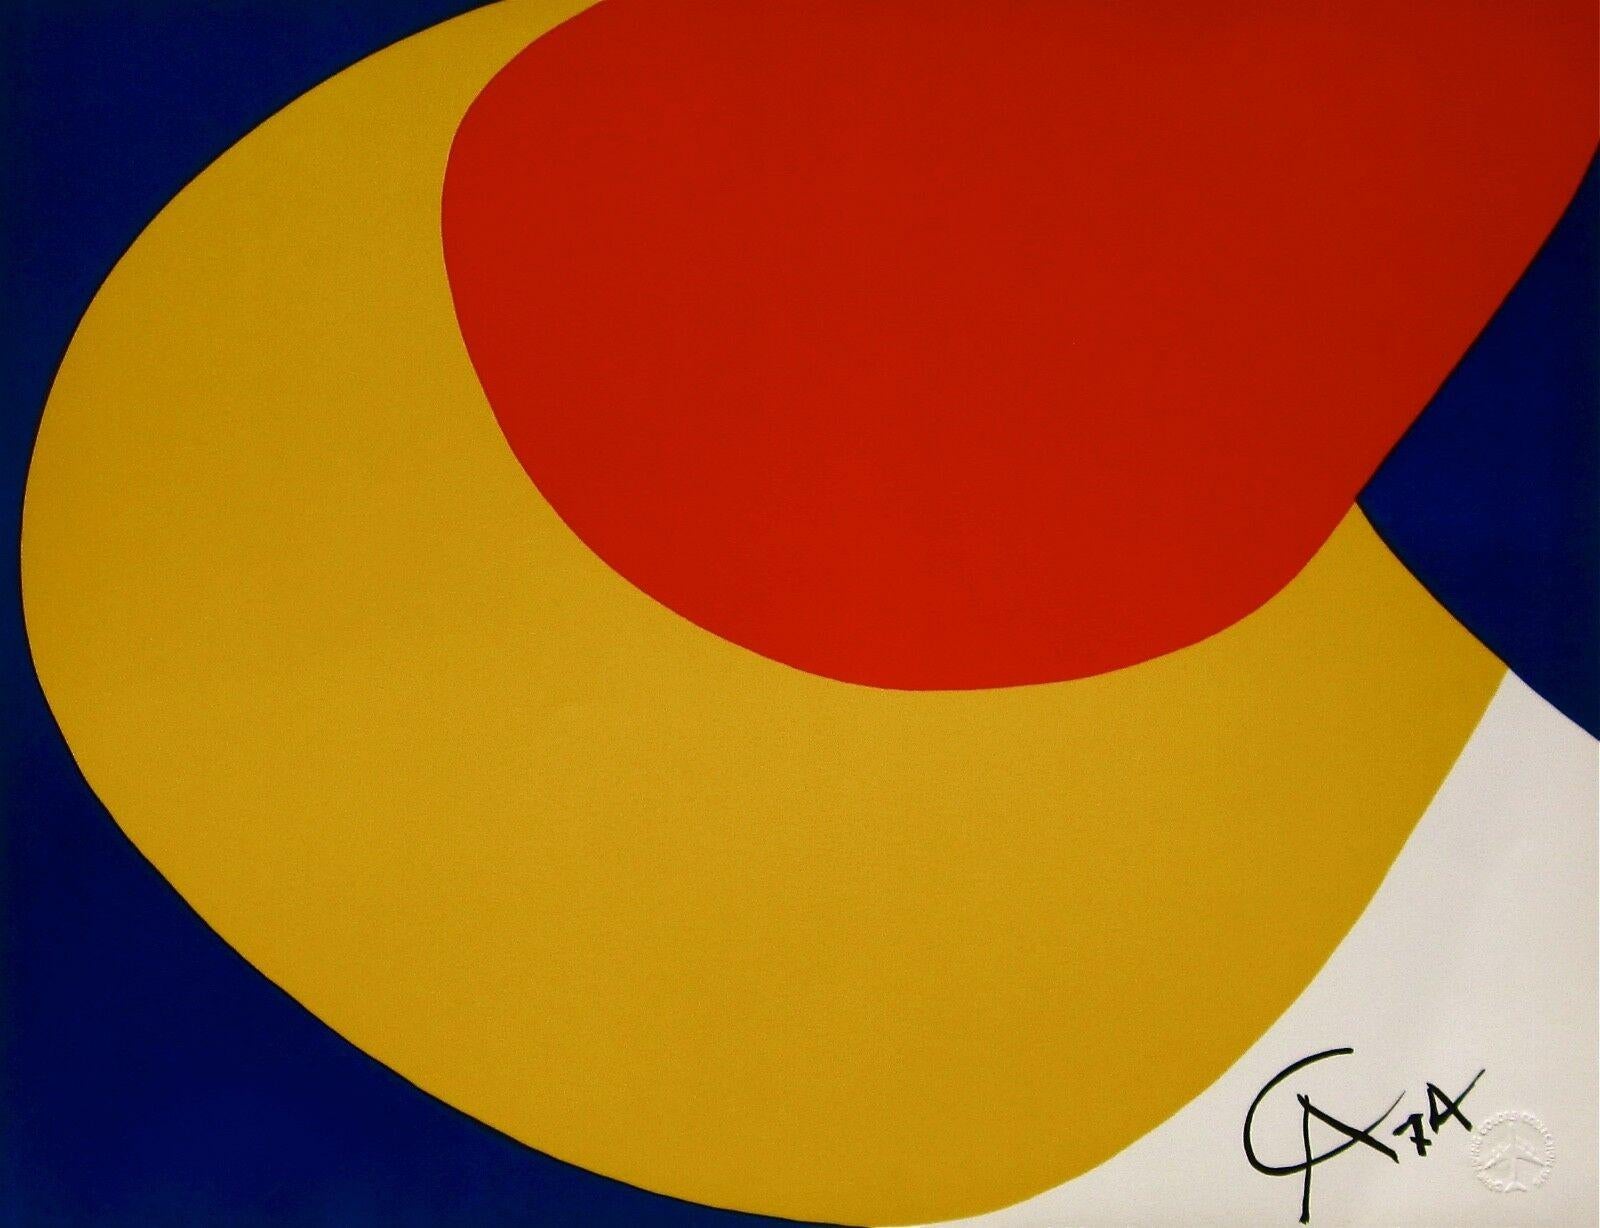 Artistics : Alexander Calder (1898-1976)
Titre : Convection (de la Collection Flying Colors de Braniff International Airways)
Année : 1974
Support : Lithographie sur papier Arches 
Taille : 20 x 26 pouces
Condit : Excellent
Edition : 3,000, plus les